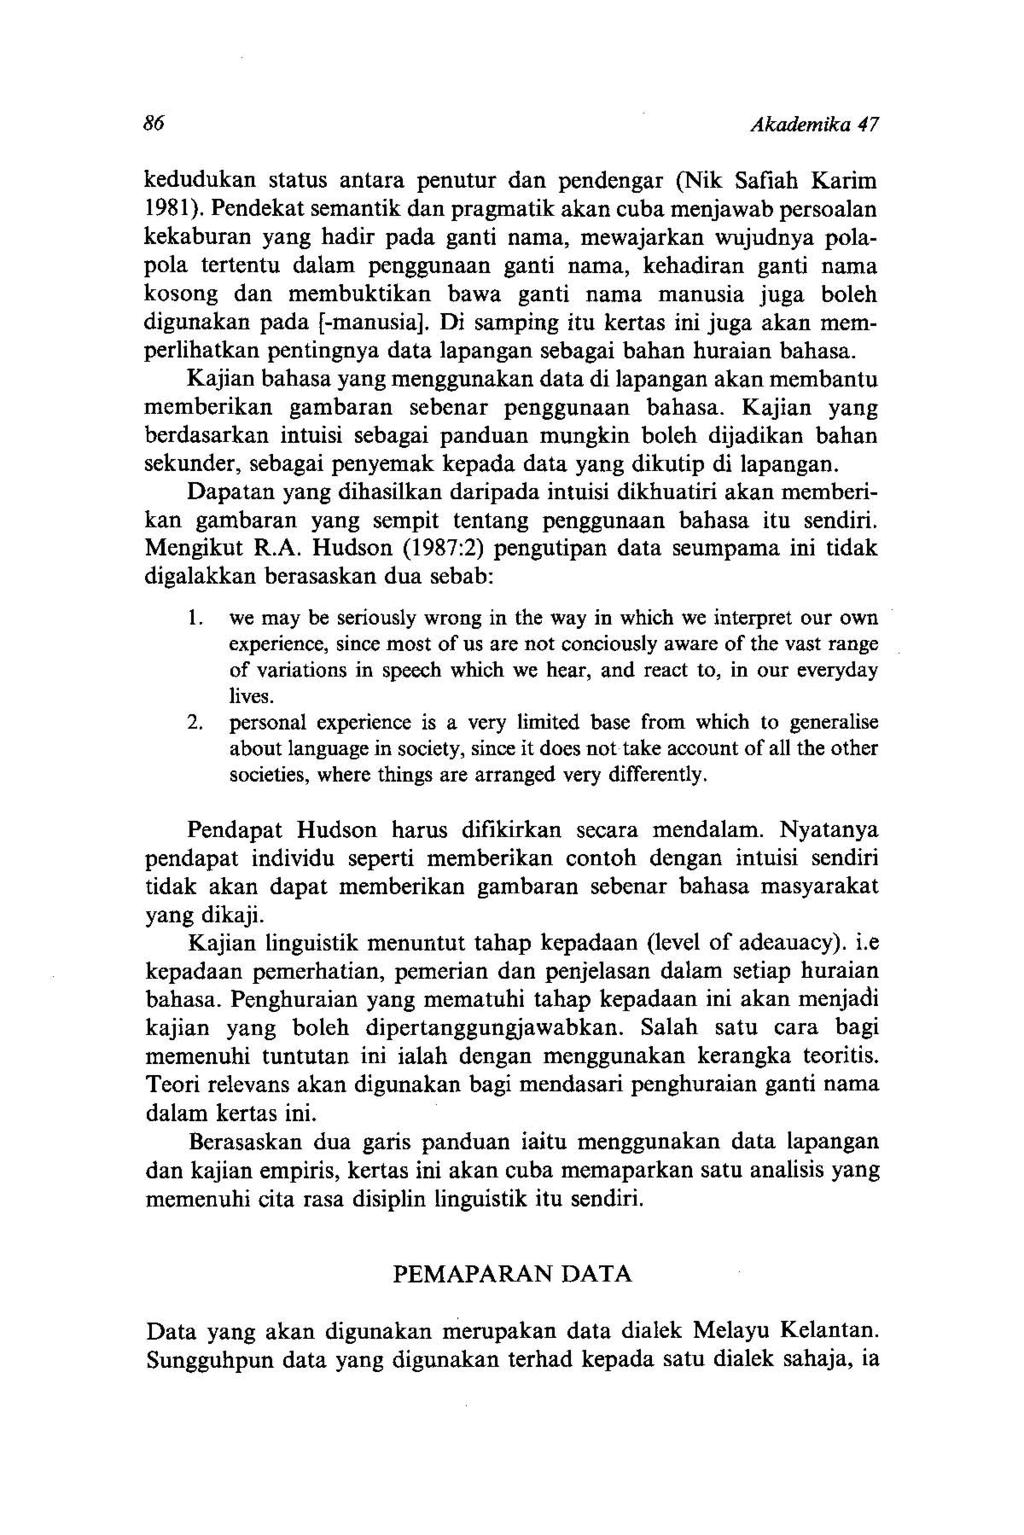 kedudukan status antara penutur dan pendengar (Nik Safiah Karim 1981).